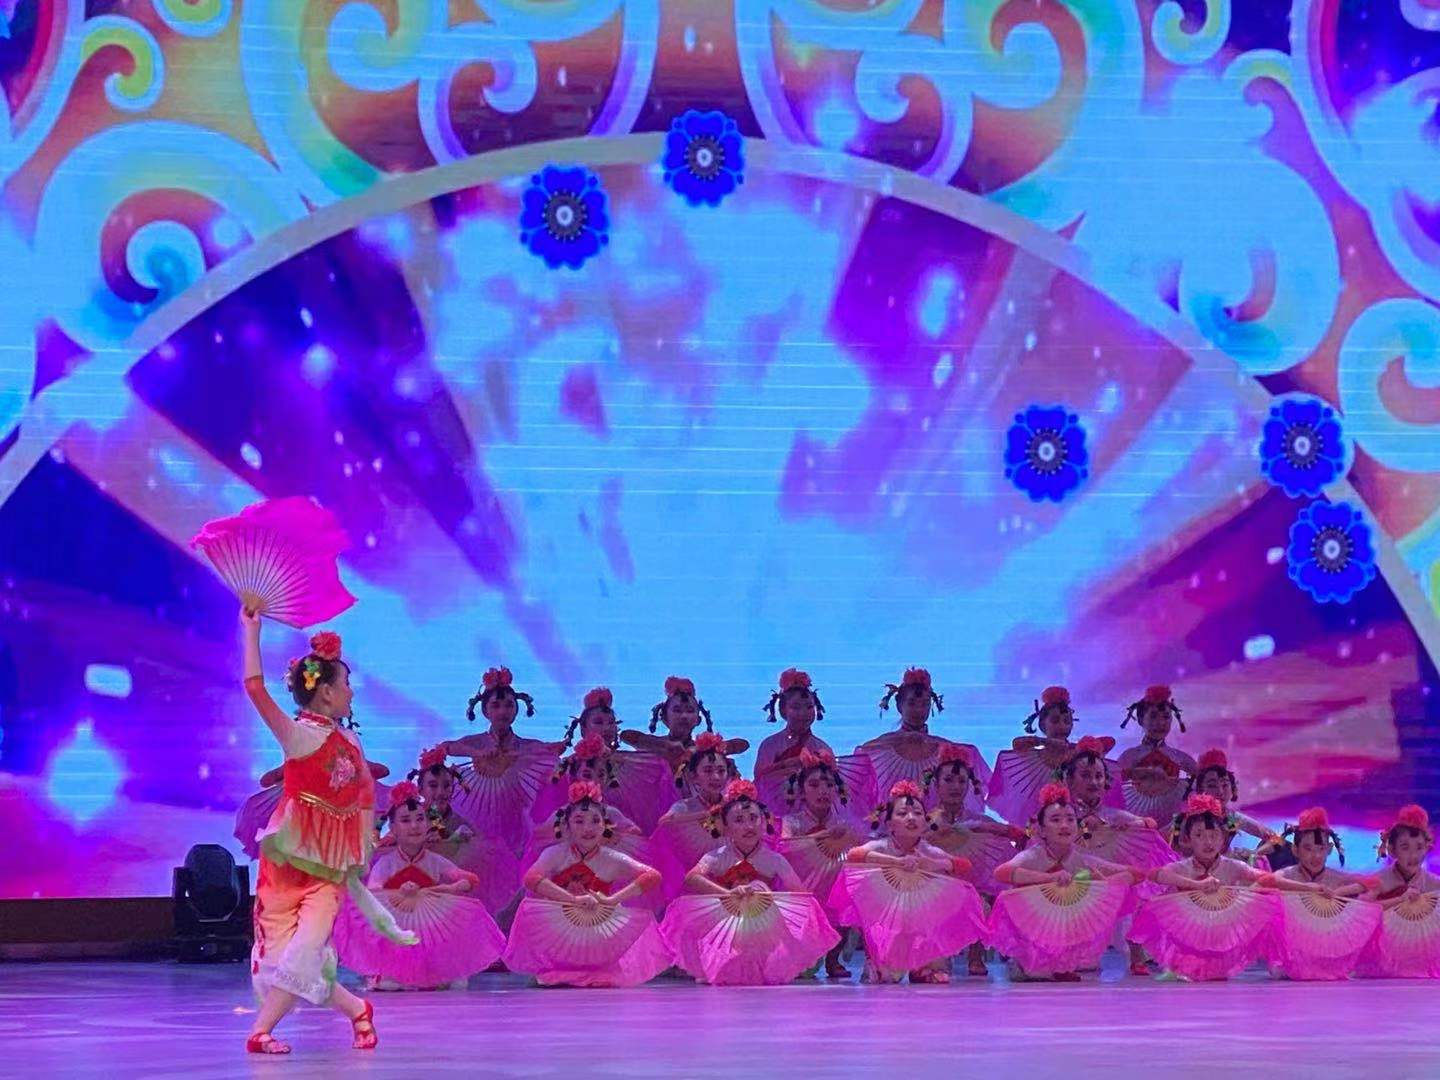 胶州玩偶们跳舞的秧歌获得了省级大奖。